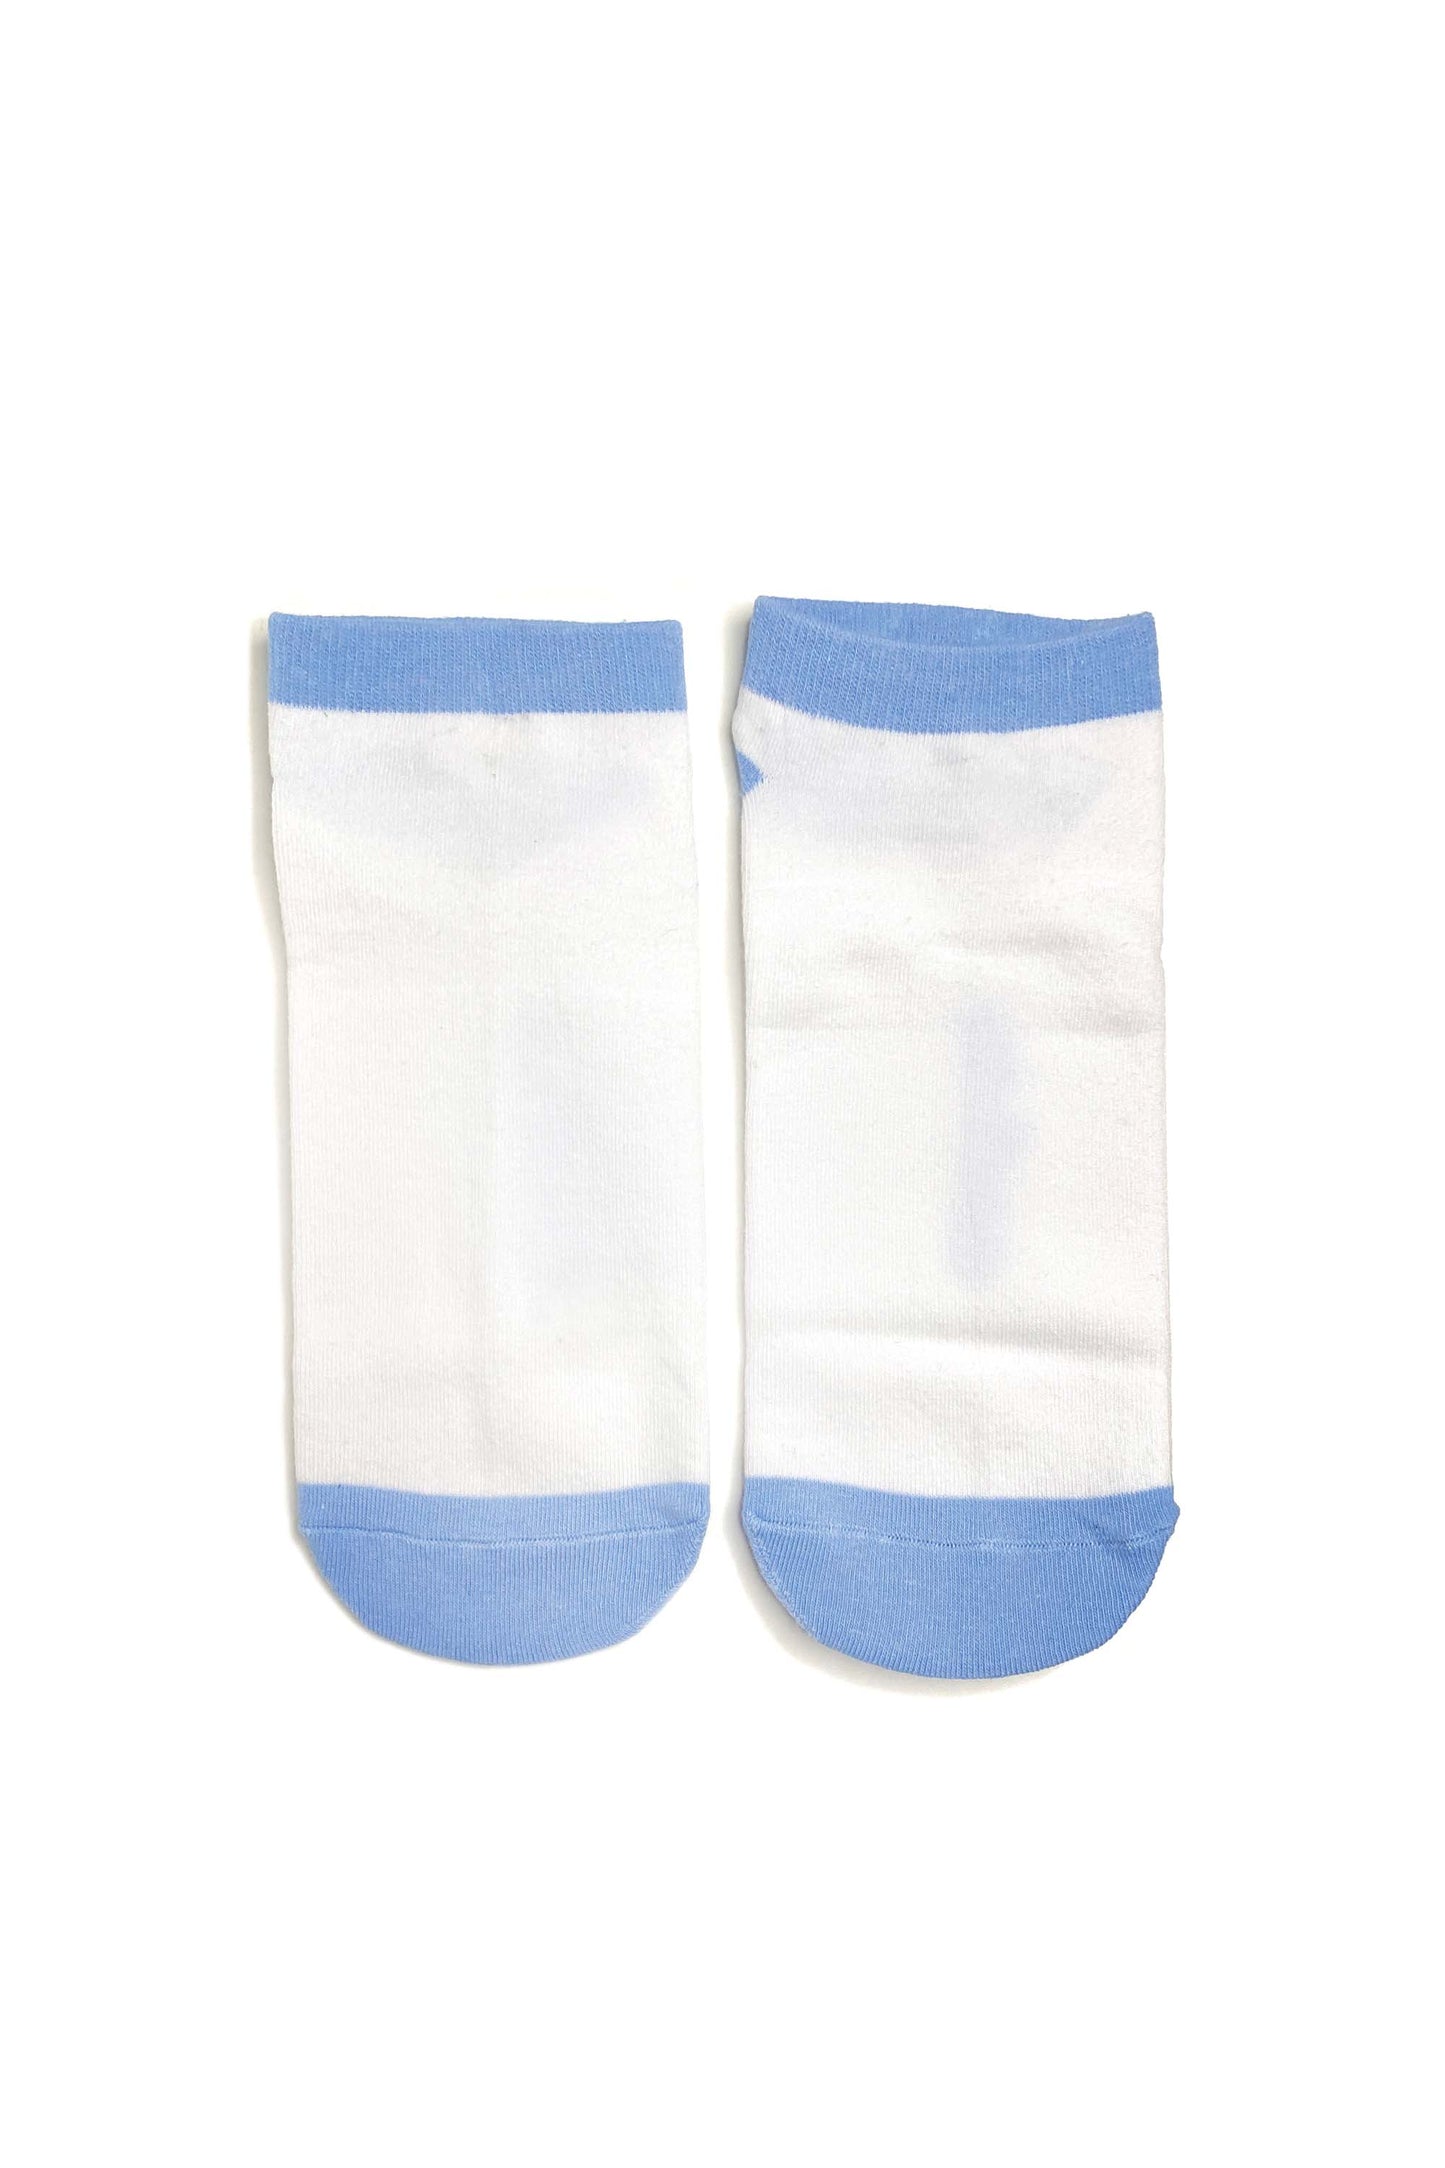 Caja de calcetines tobilleros para adultos | 6 pares